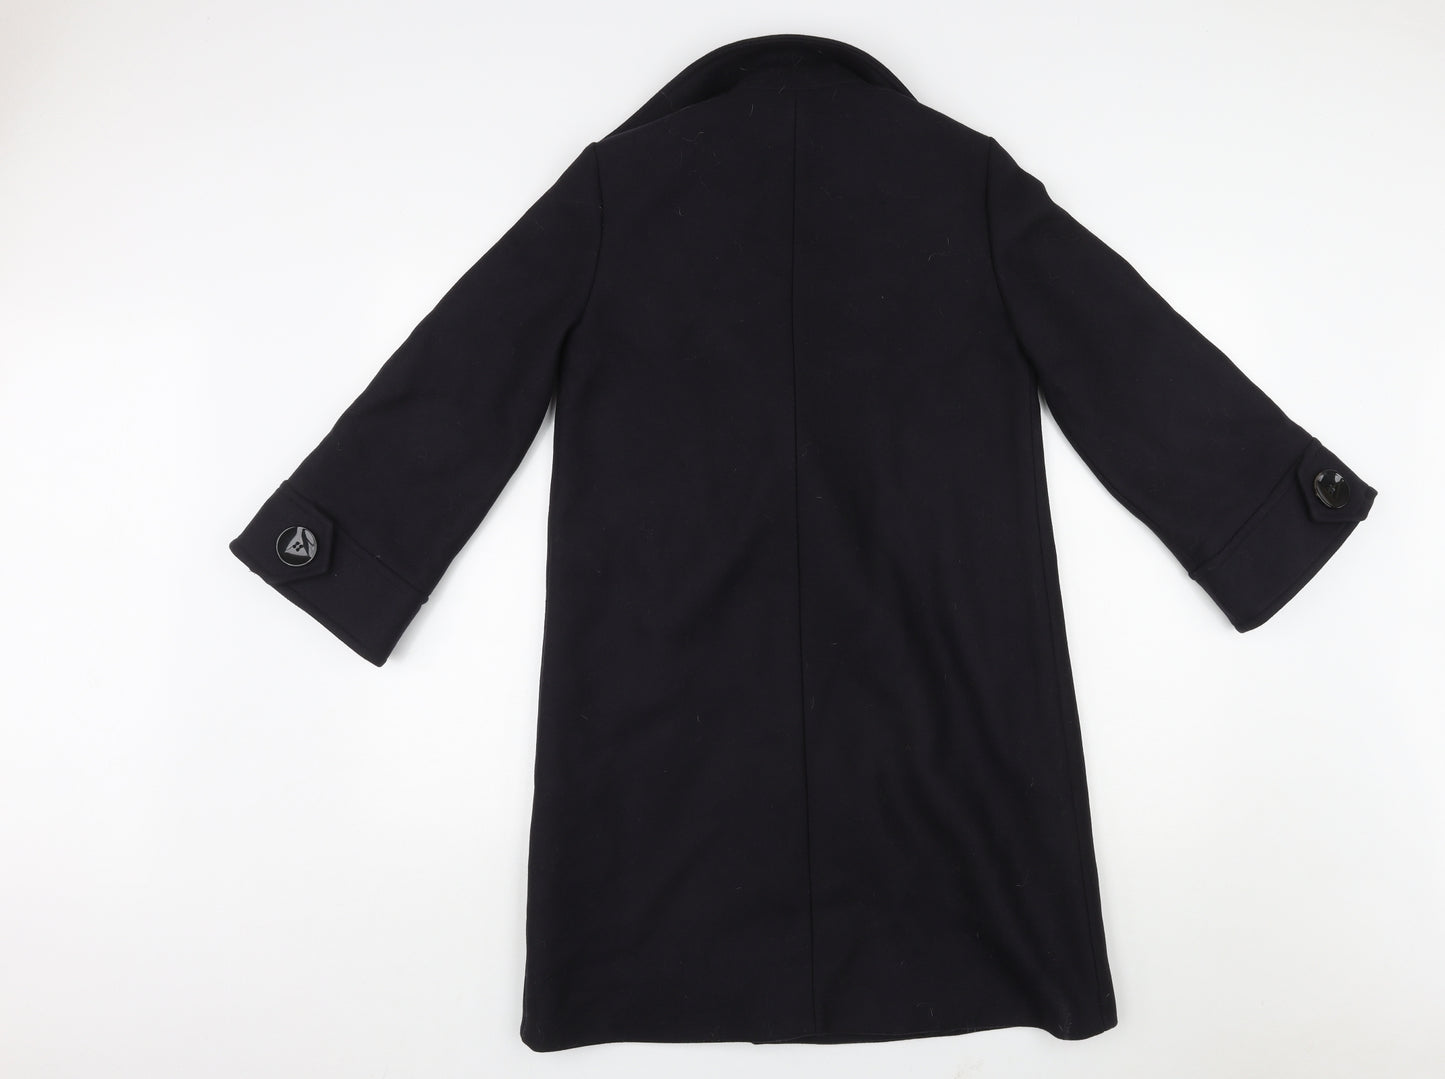 Zara Womens Black Pea Coat Coat Size XS Button